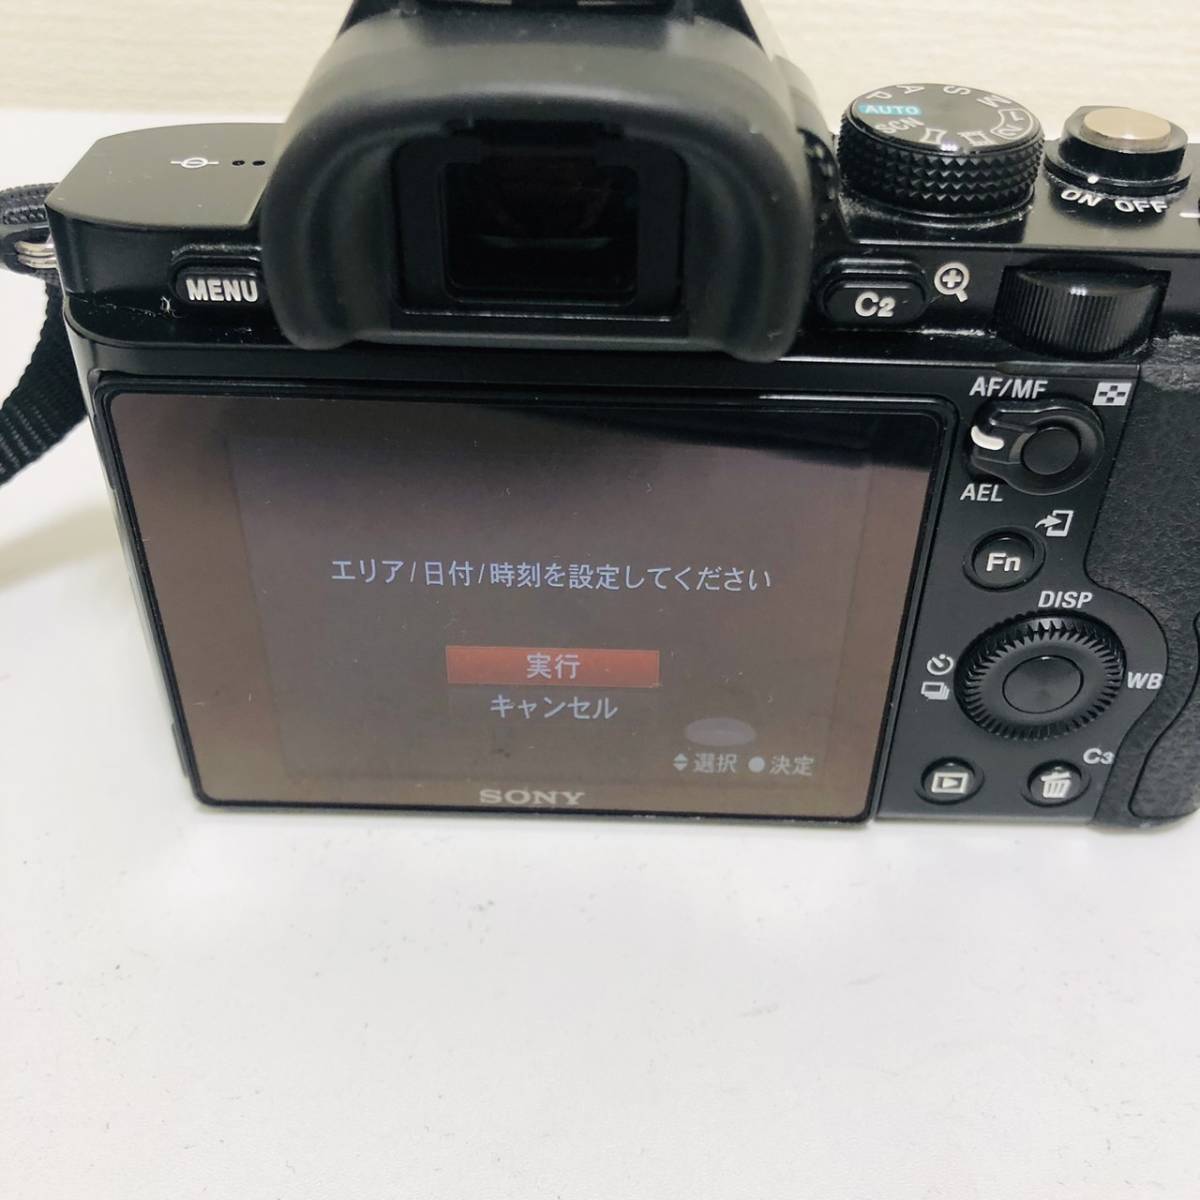 【SPM-2571】カメラ Sony α7 / FE 3.5-5.6/28-70 OSS デジタル一眼レフ セット品 通電確認済み 動作確認済み 写真 _画像7